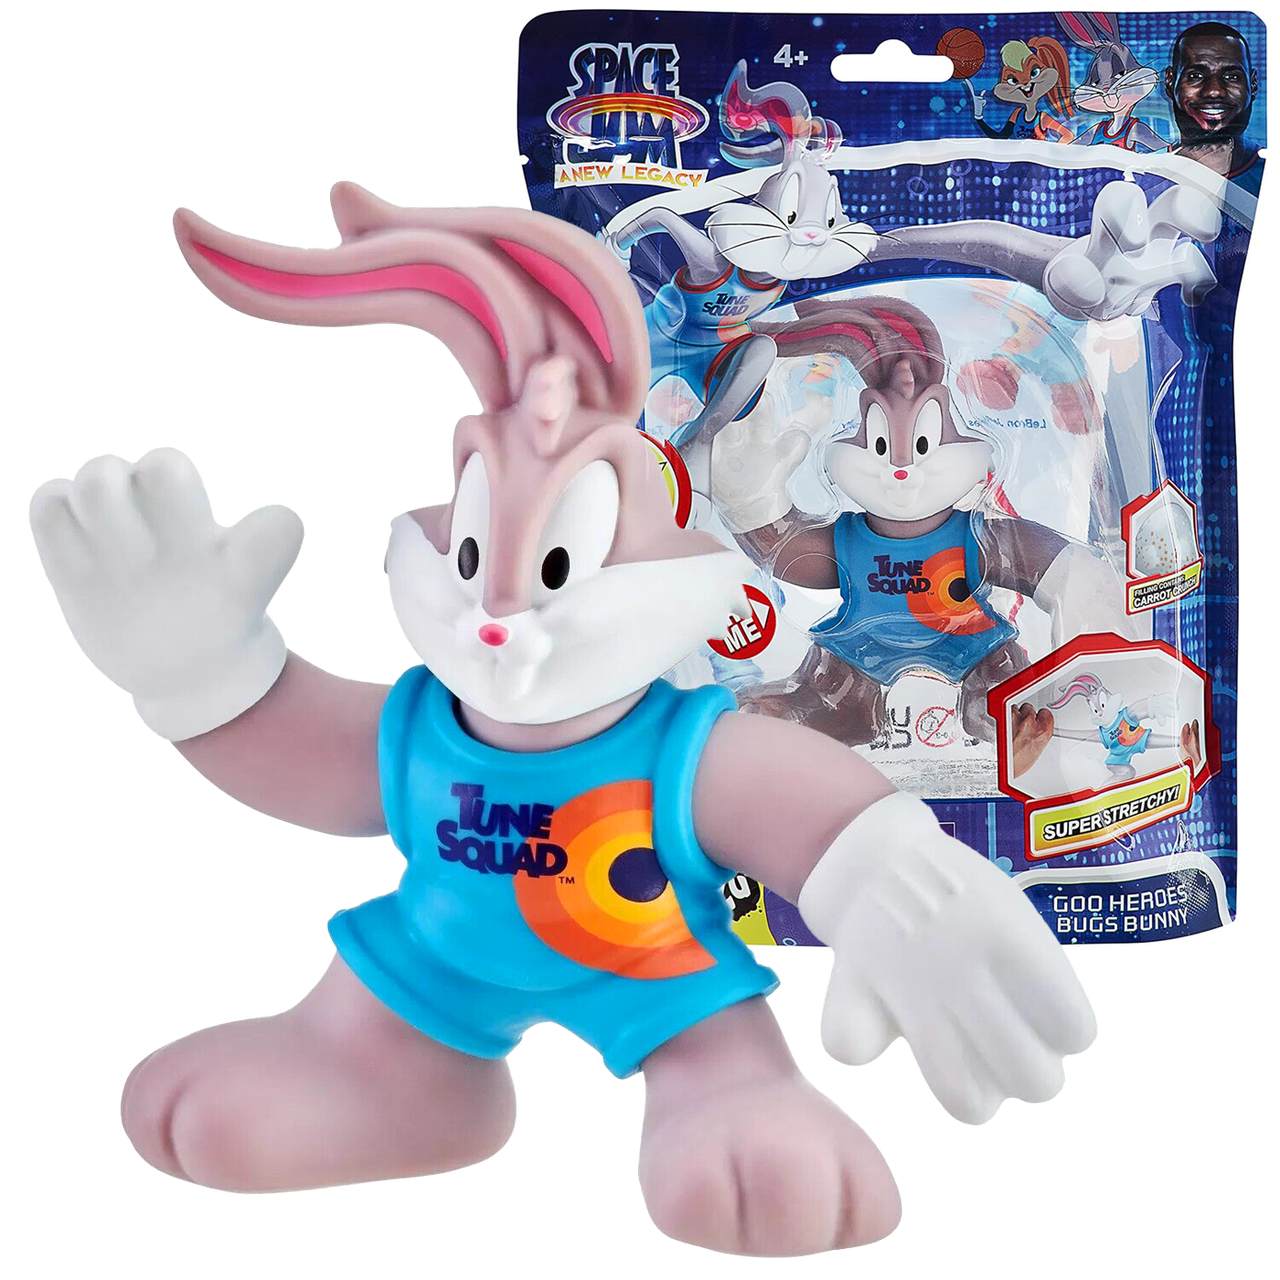 Space Jam Goo Jit Zu Bugs Bunny​​​​​​​  Стретч-тягучка ігрова фігурка Гуджитсу кролик Багз Бані із фільму Космічний джем